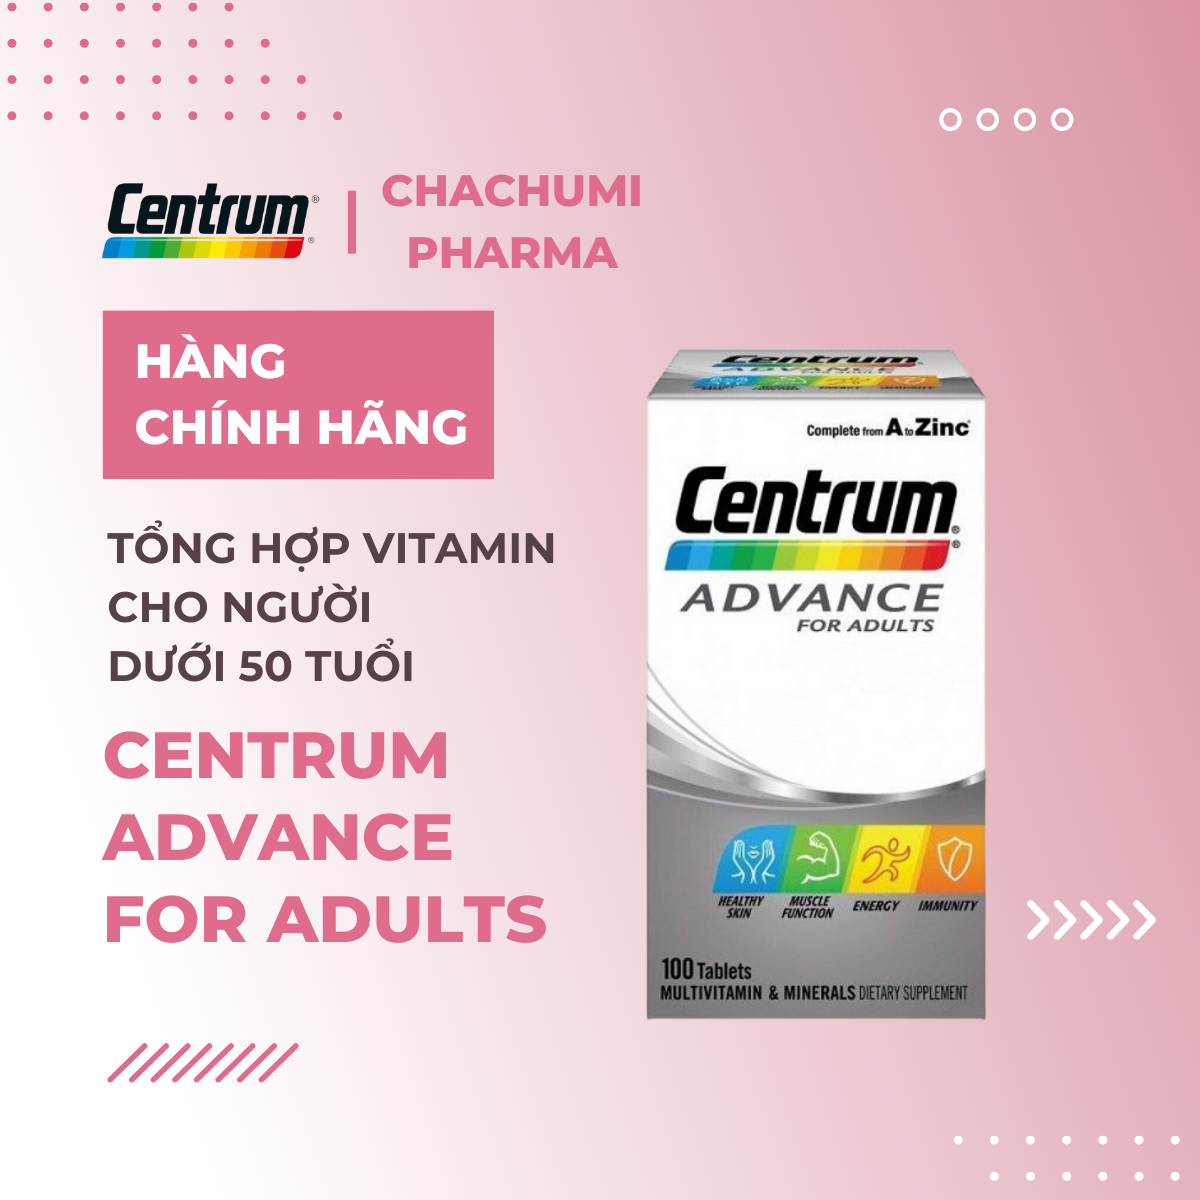 Centrum Advance For Adults - Tổng Hợp Vitamin Cho Người dưới 50 Tuổi 100 viên